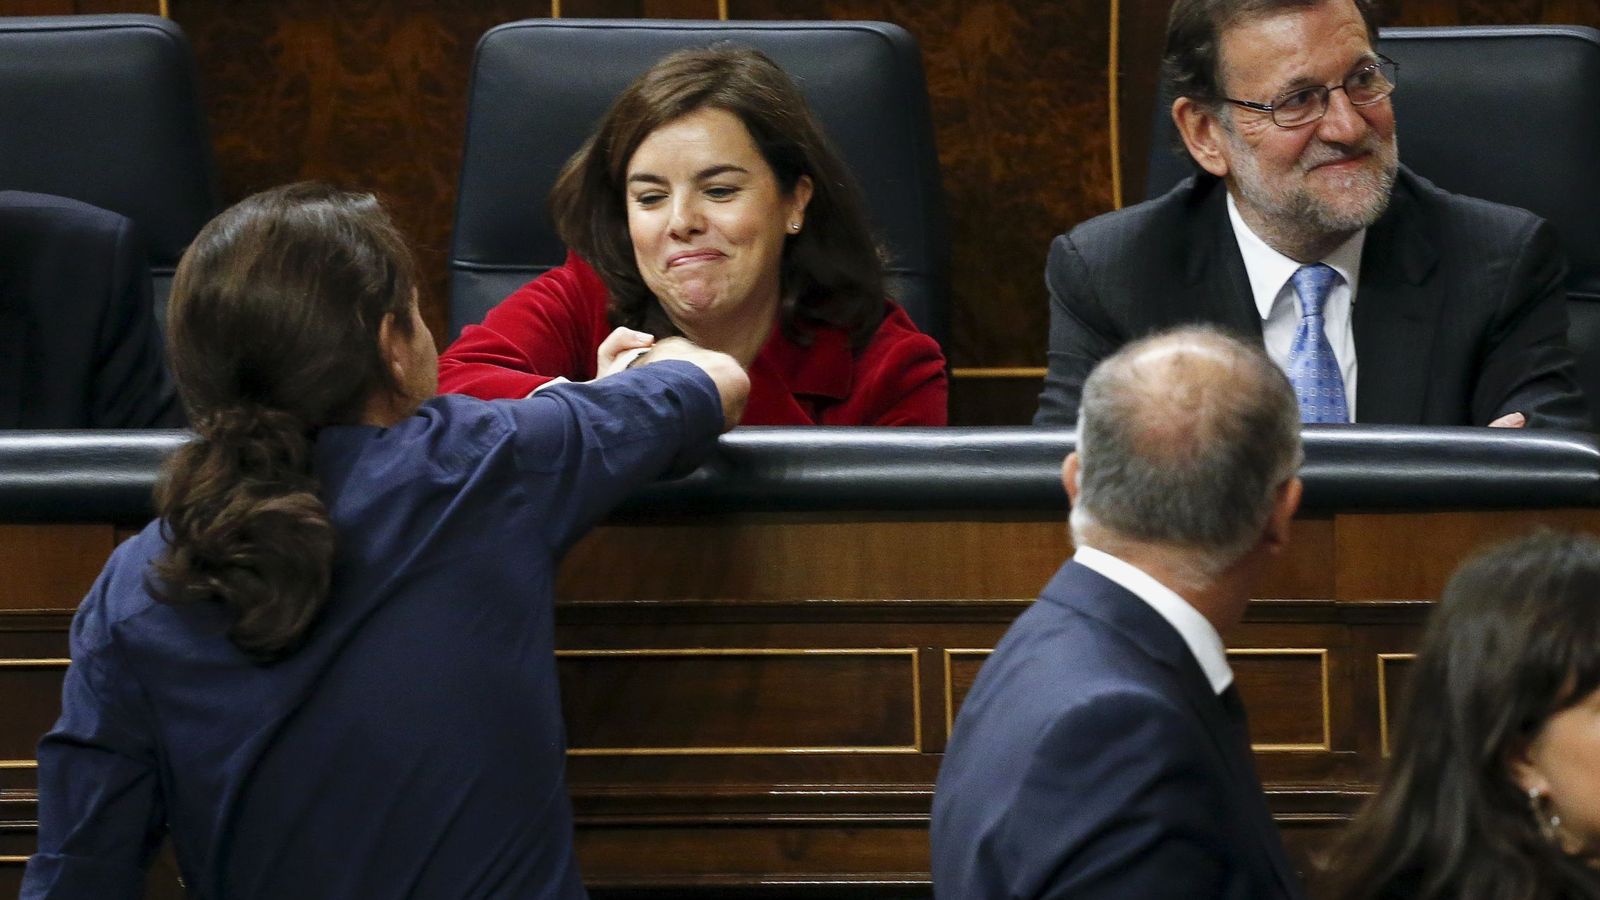 Foto: La vicepresidenta del Gobierno, Soraya Sáenz de Santamaría, saluda al líder de Podemos, Pablo Iglesias, en el Congreso. (Reuters)